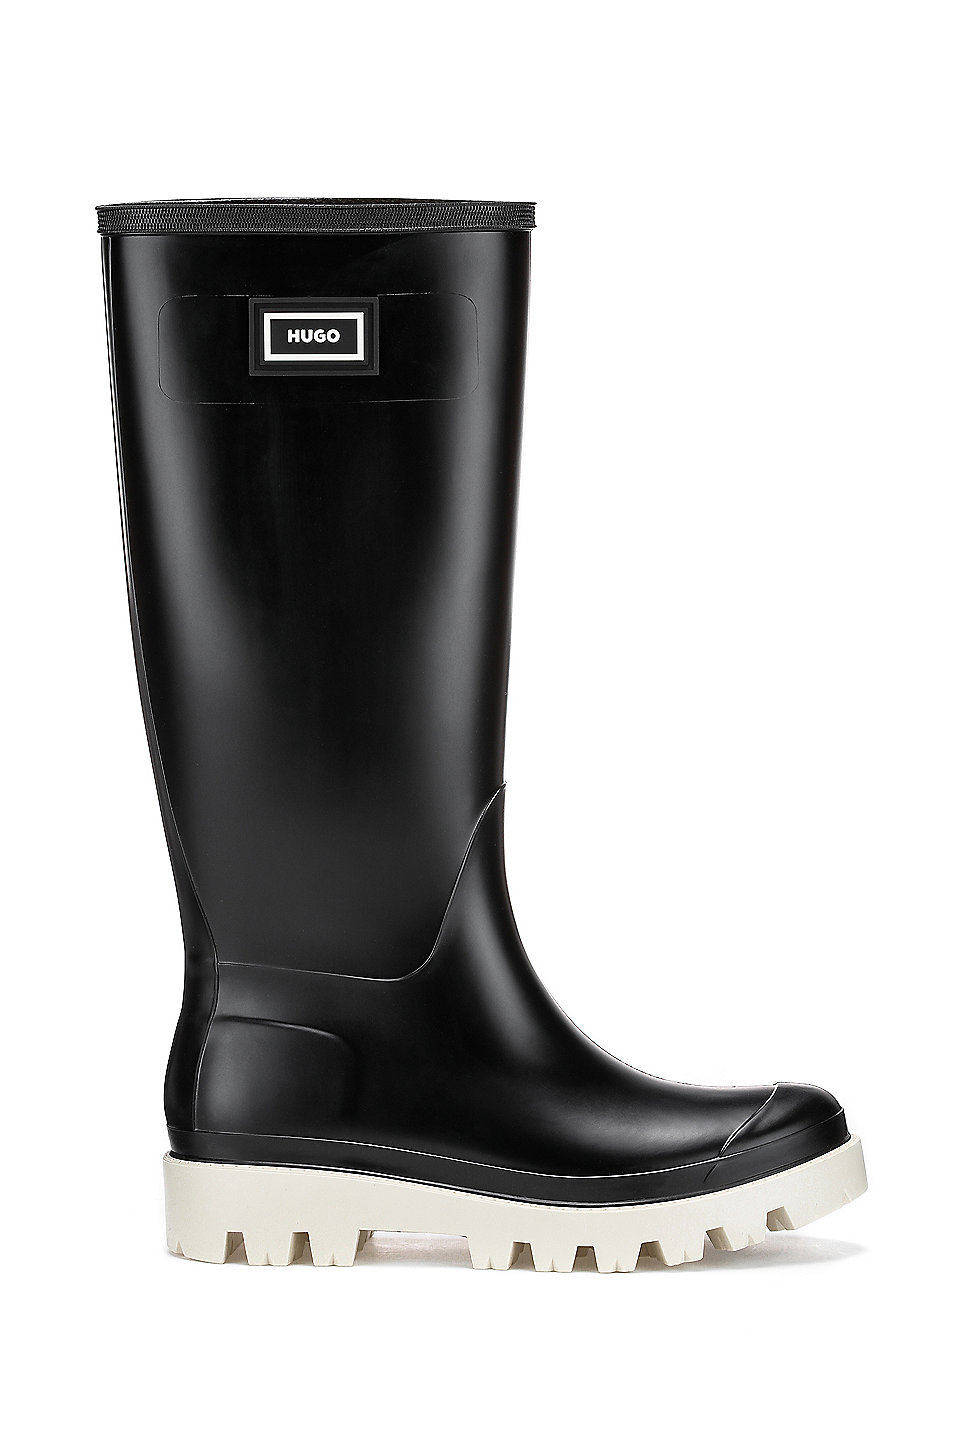 HUGO BOSS Donna Scarpe Stivali Stivali di gomma Stivali da pioggia con targhetta con logo 